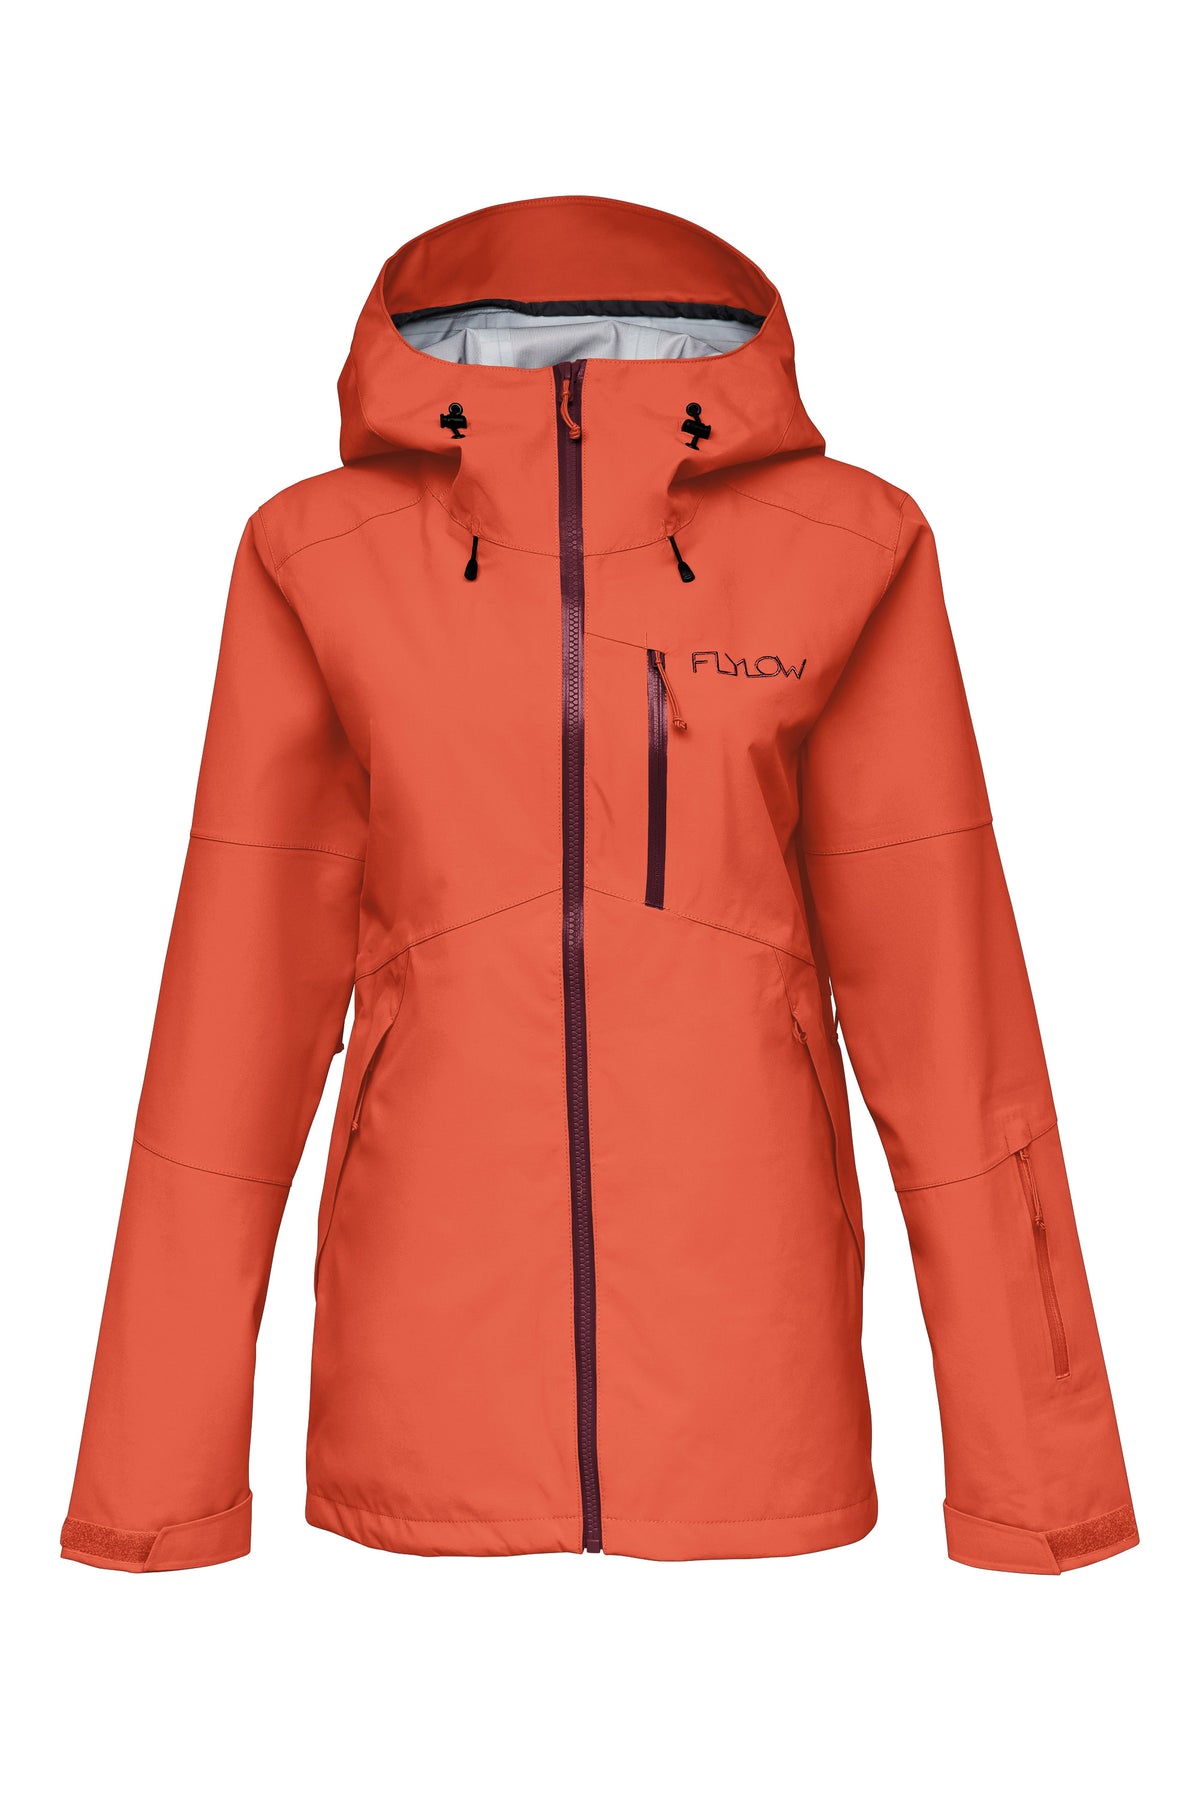 Billie Coat - Women's Backcountry Ski Jacket | Flylow Gear